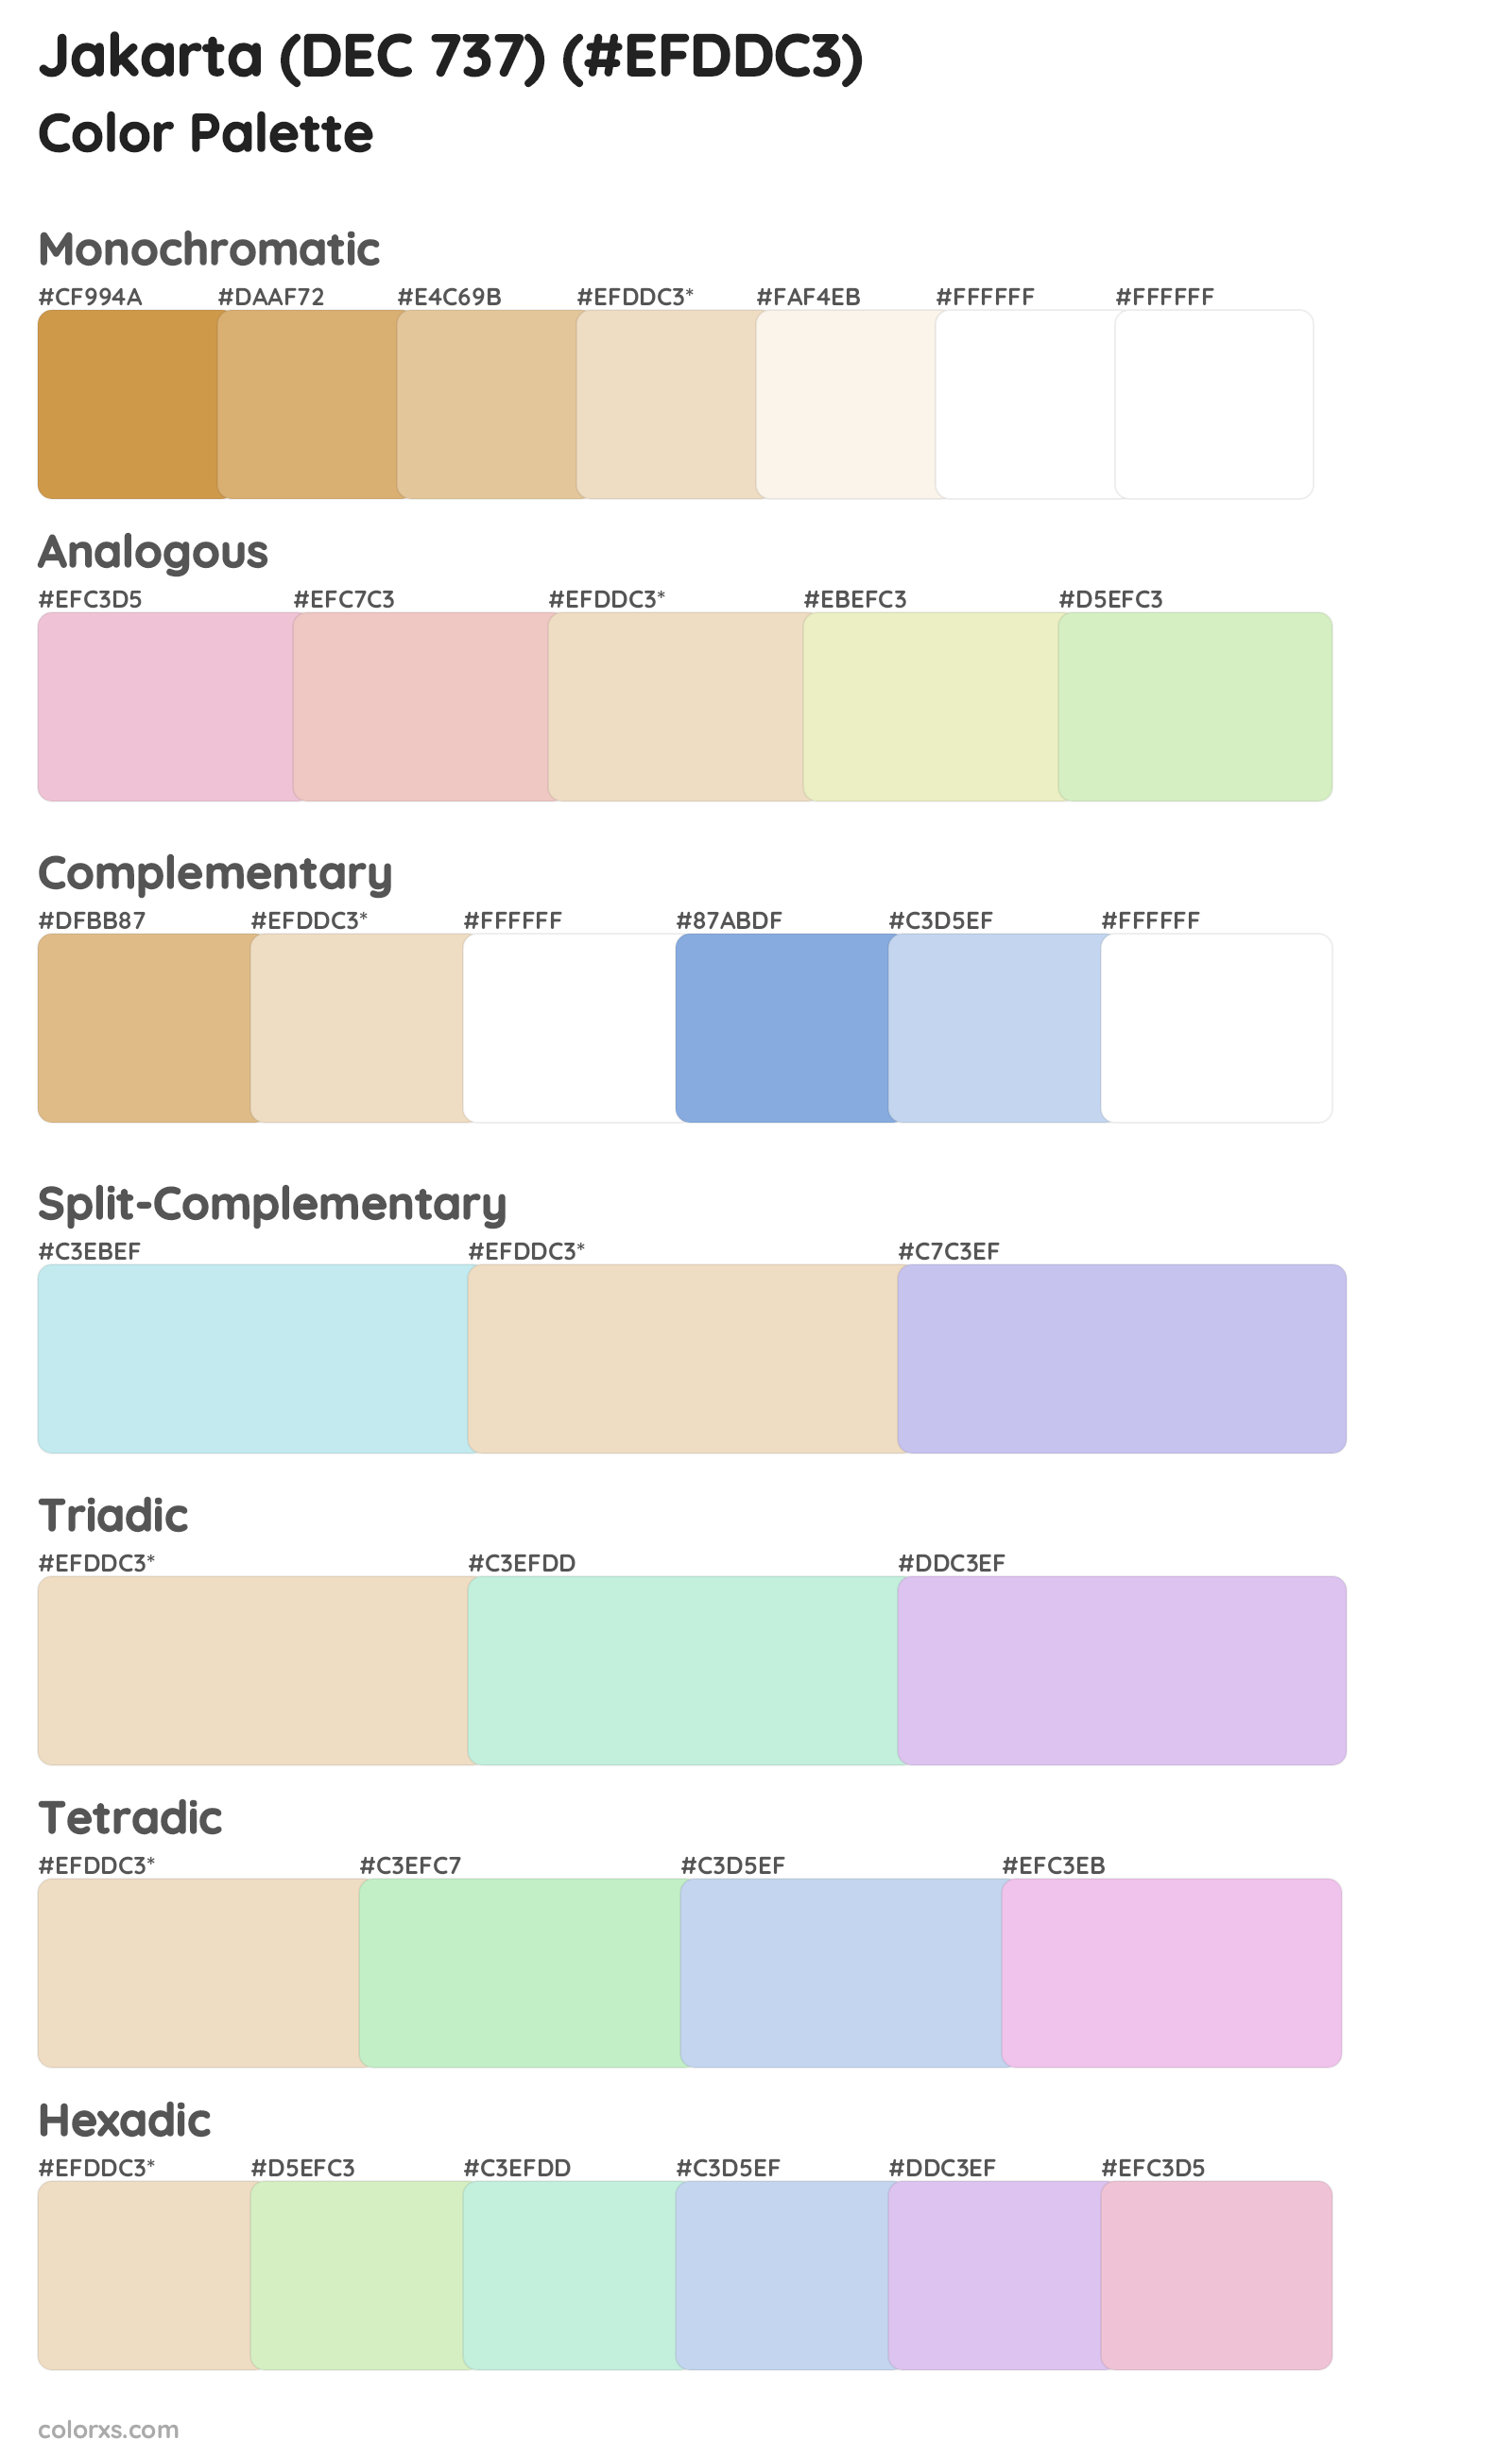 Jakarta (DEC 737) Color Scheme Palettes